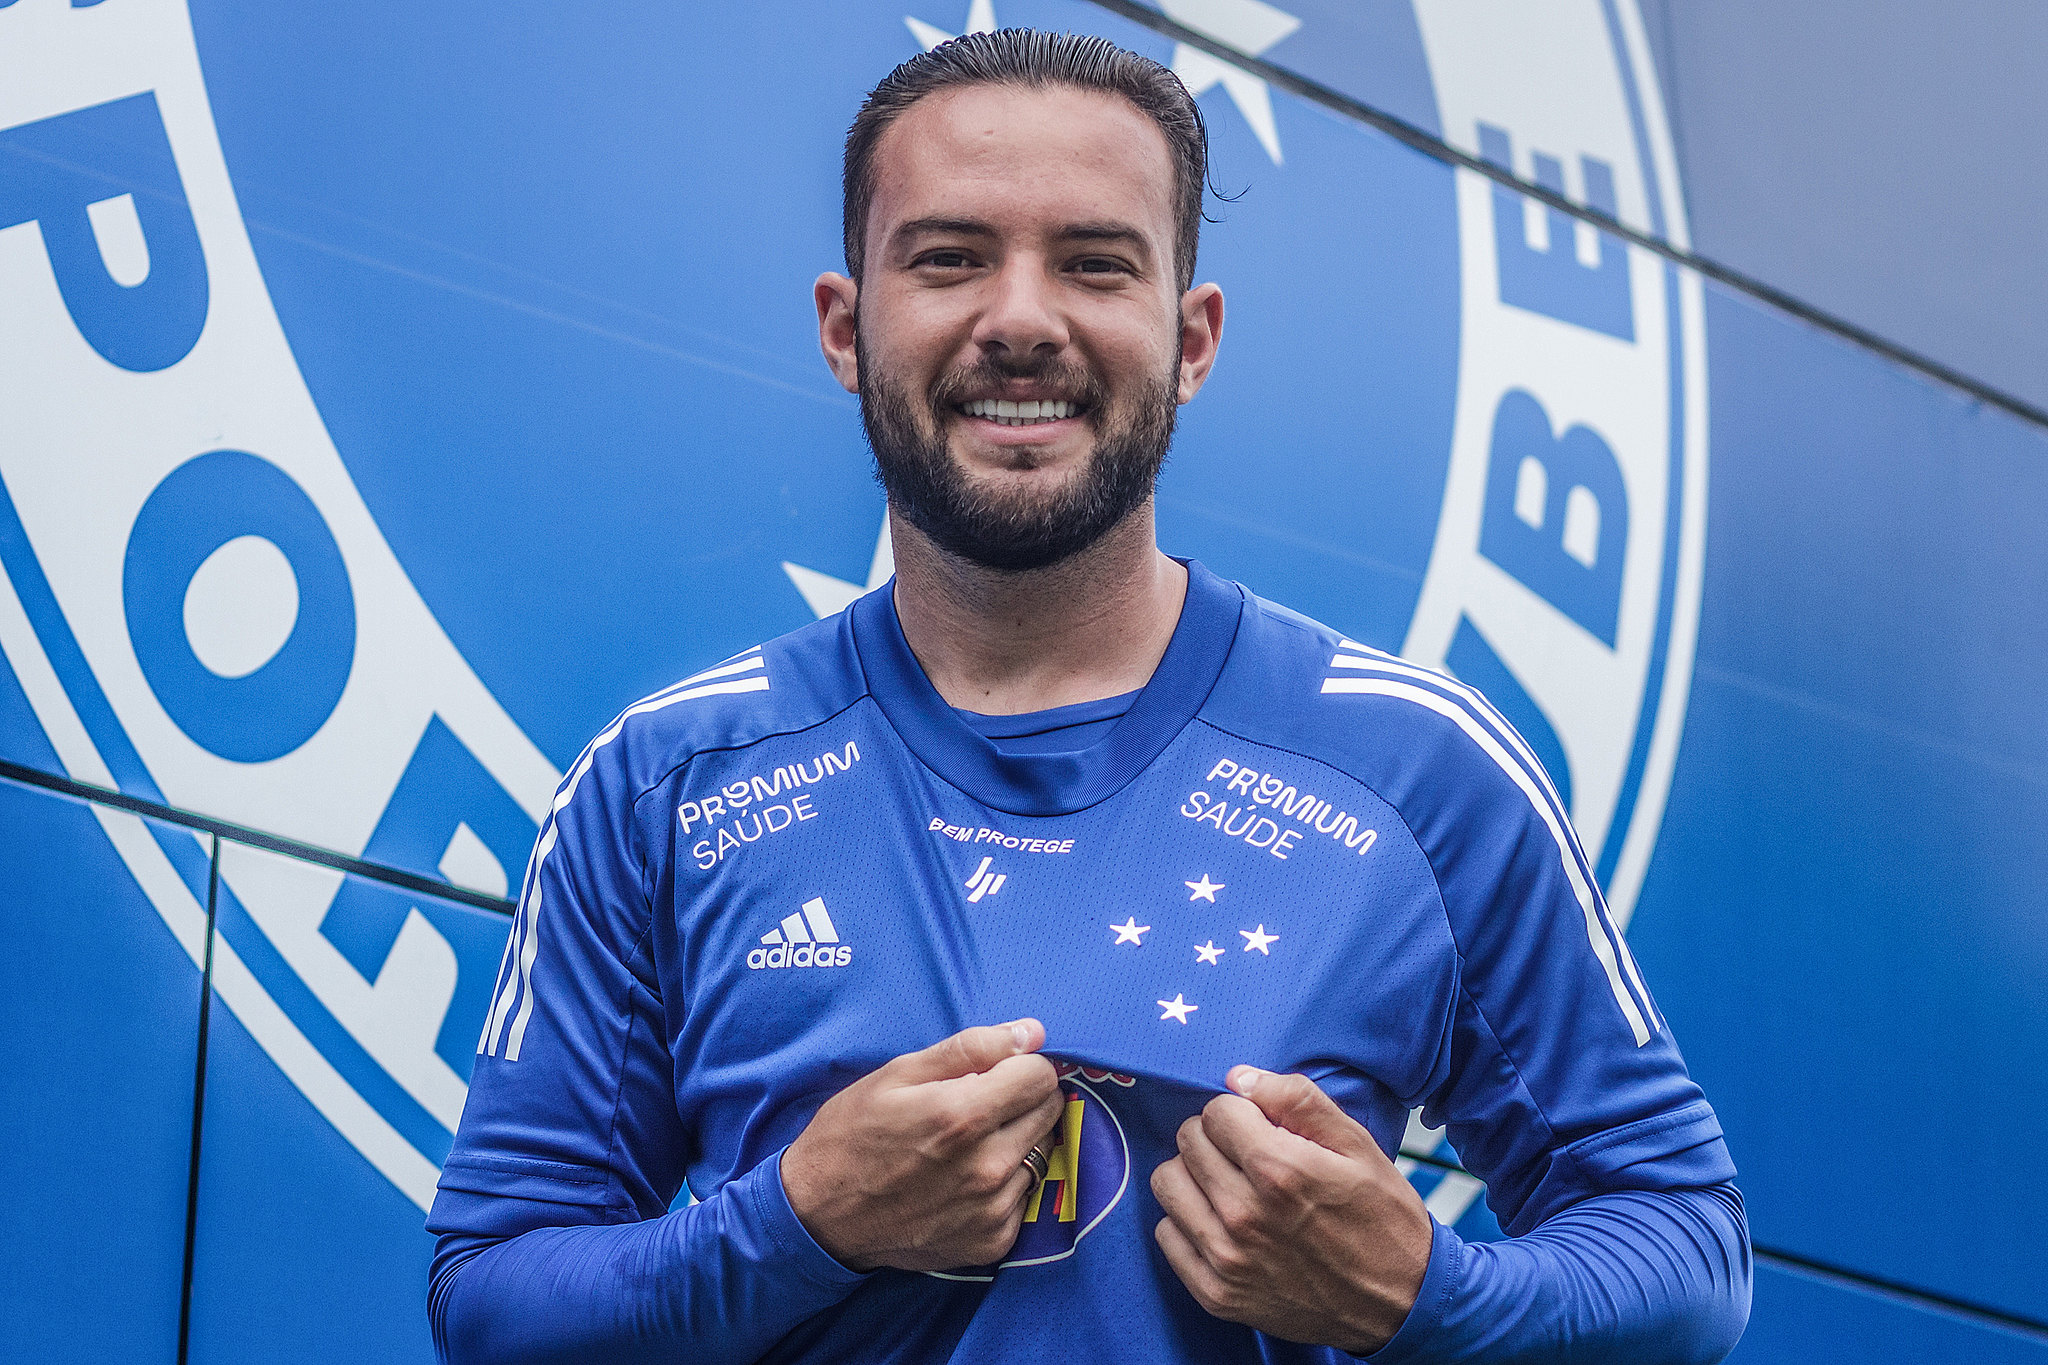 Com experiência na Série B, Giovanni projeta acesso e futuro no Cruzeiro: 'Quero ficar na história com títulos'